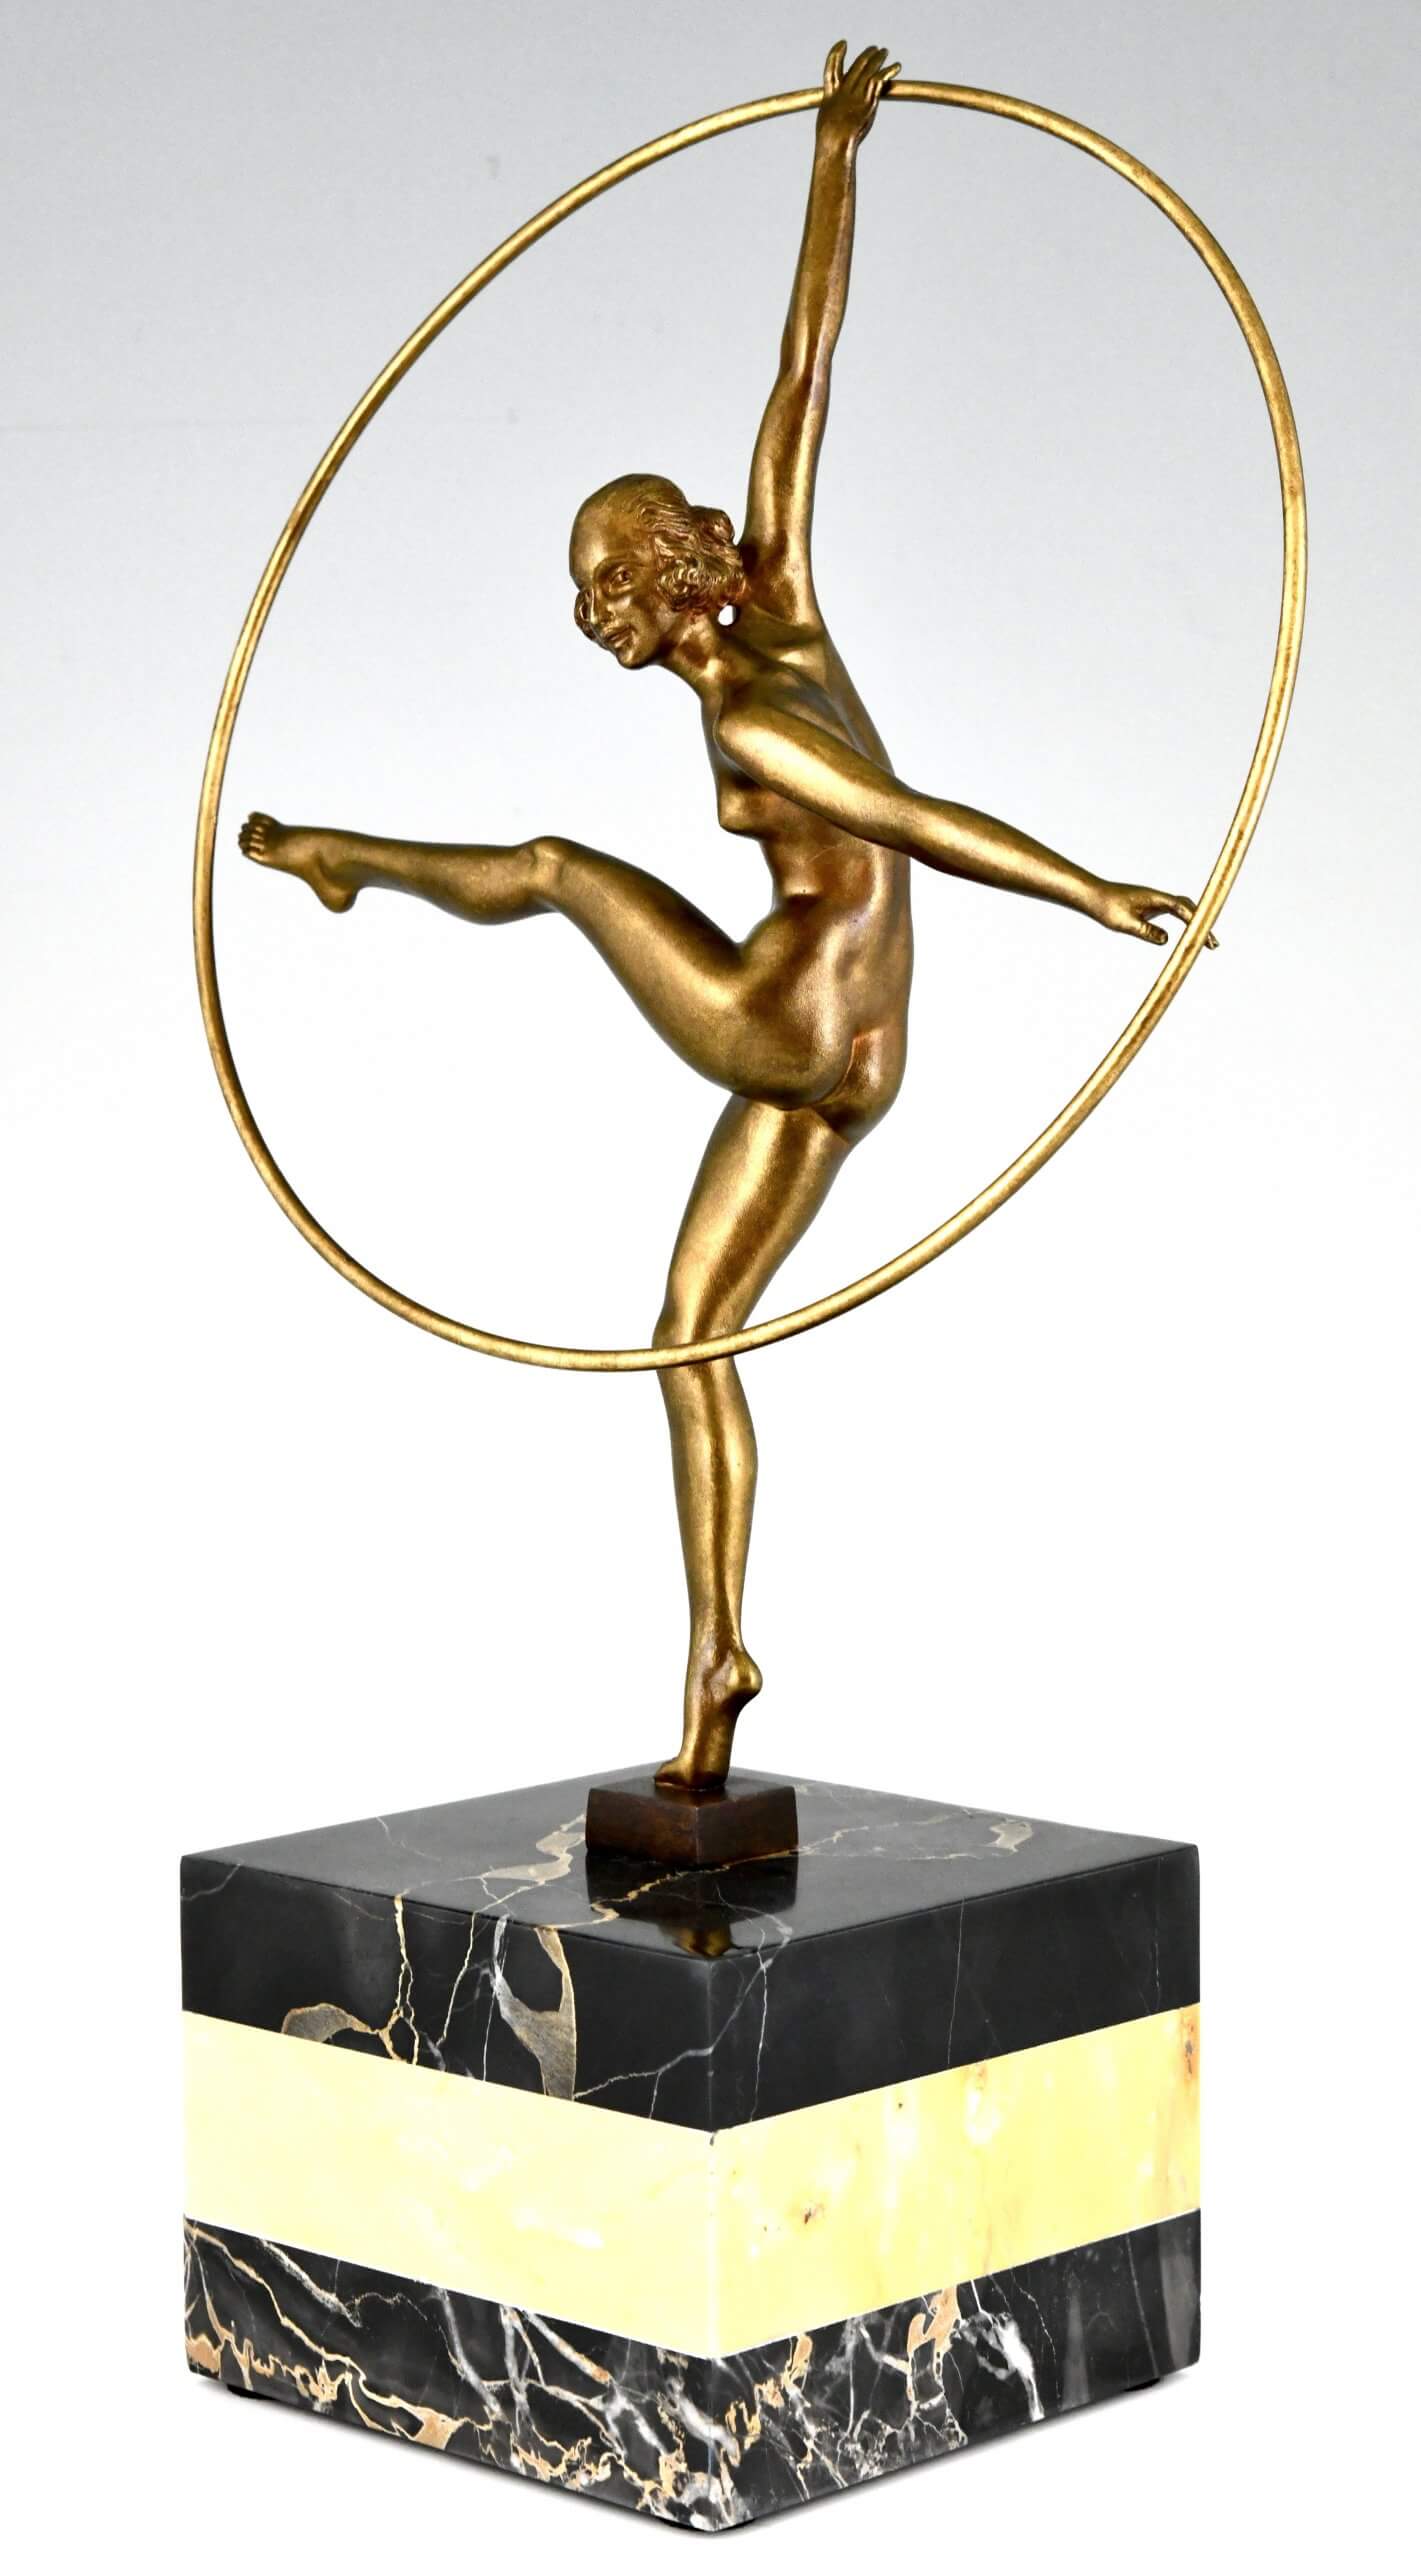 Art Deco bronze sculpture hoop dancer.